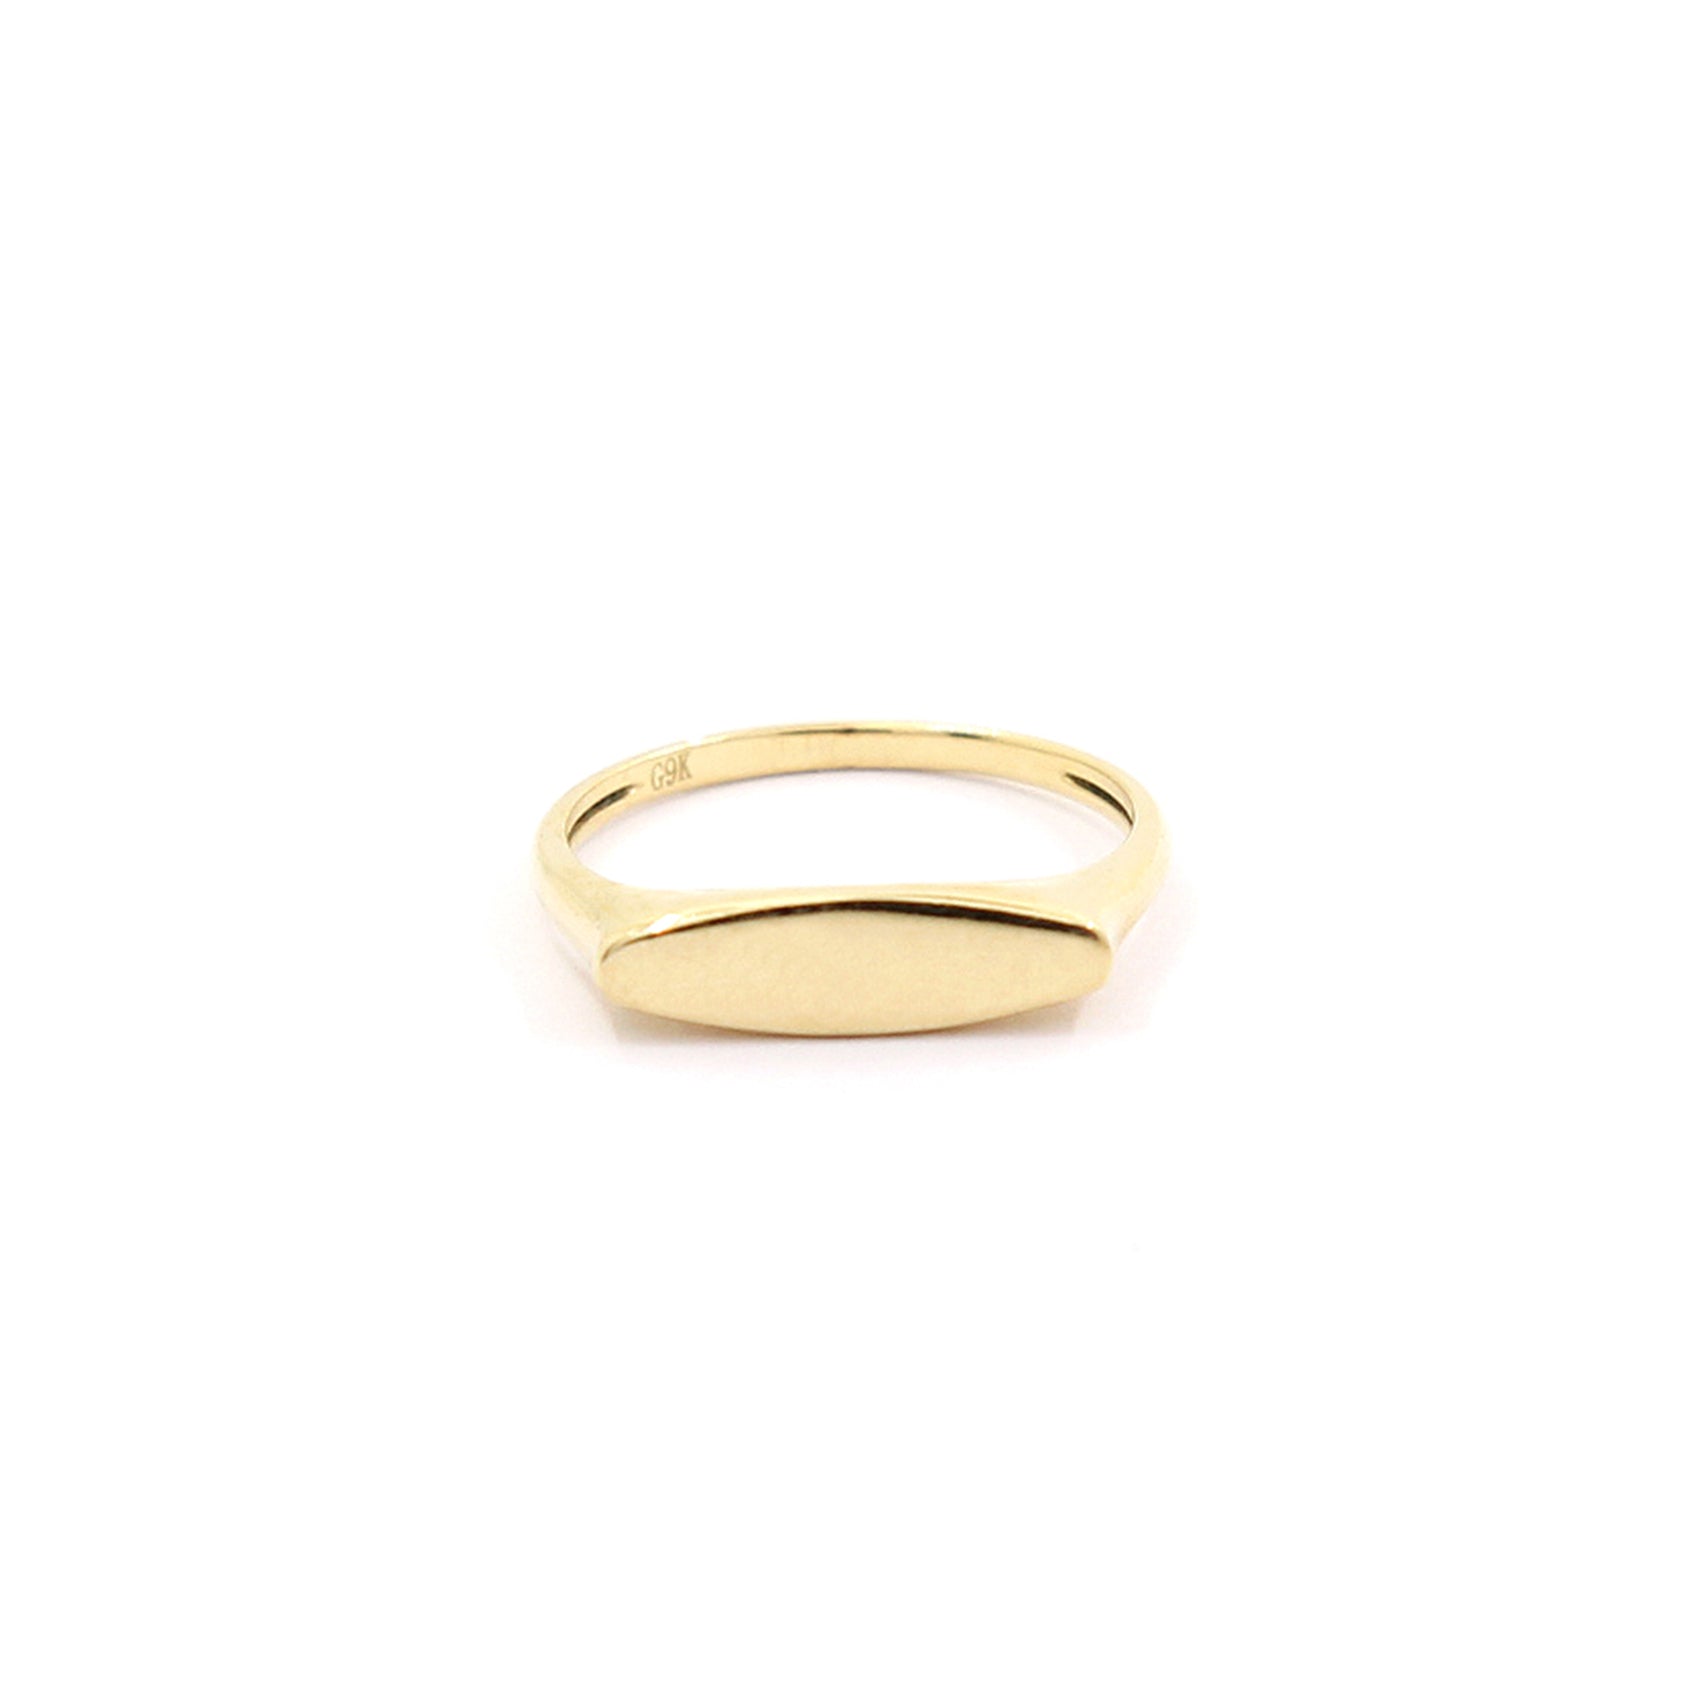 Buy Stylish Gold Sydney Signet Ring Here